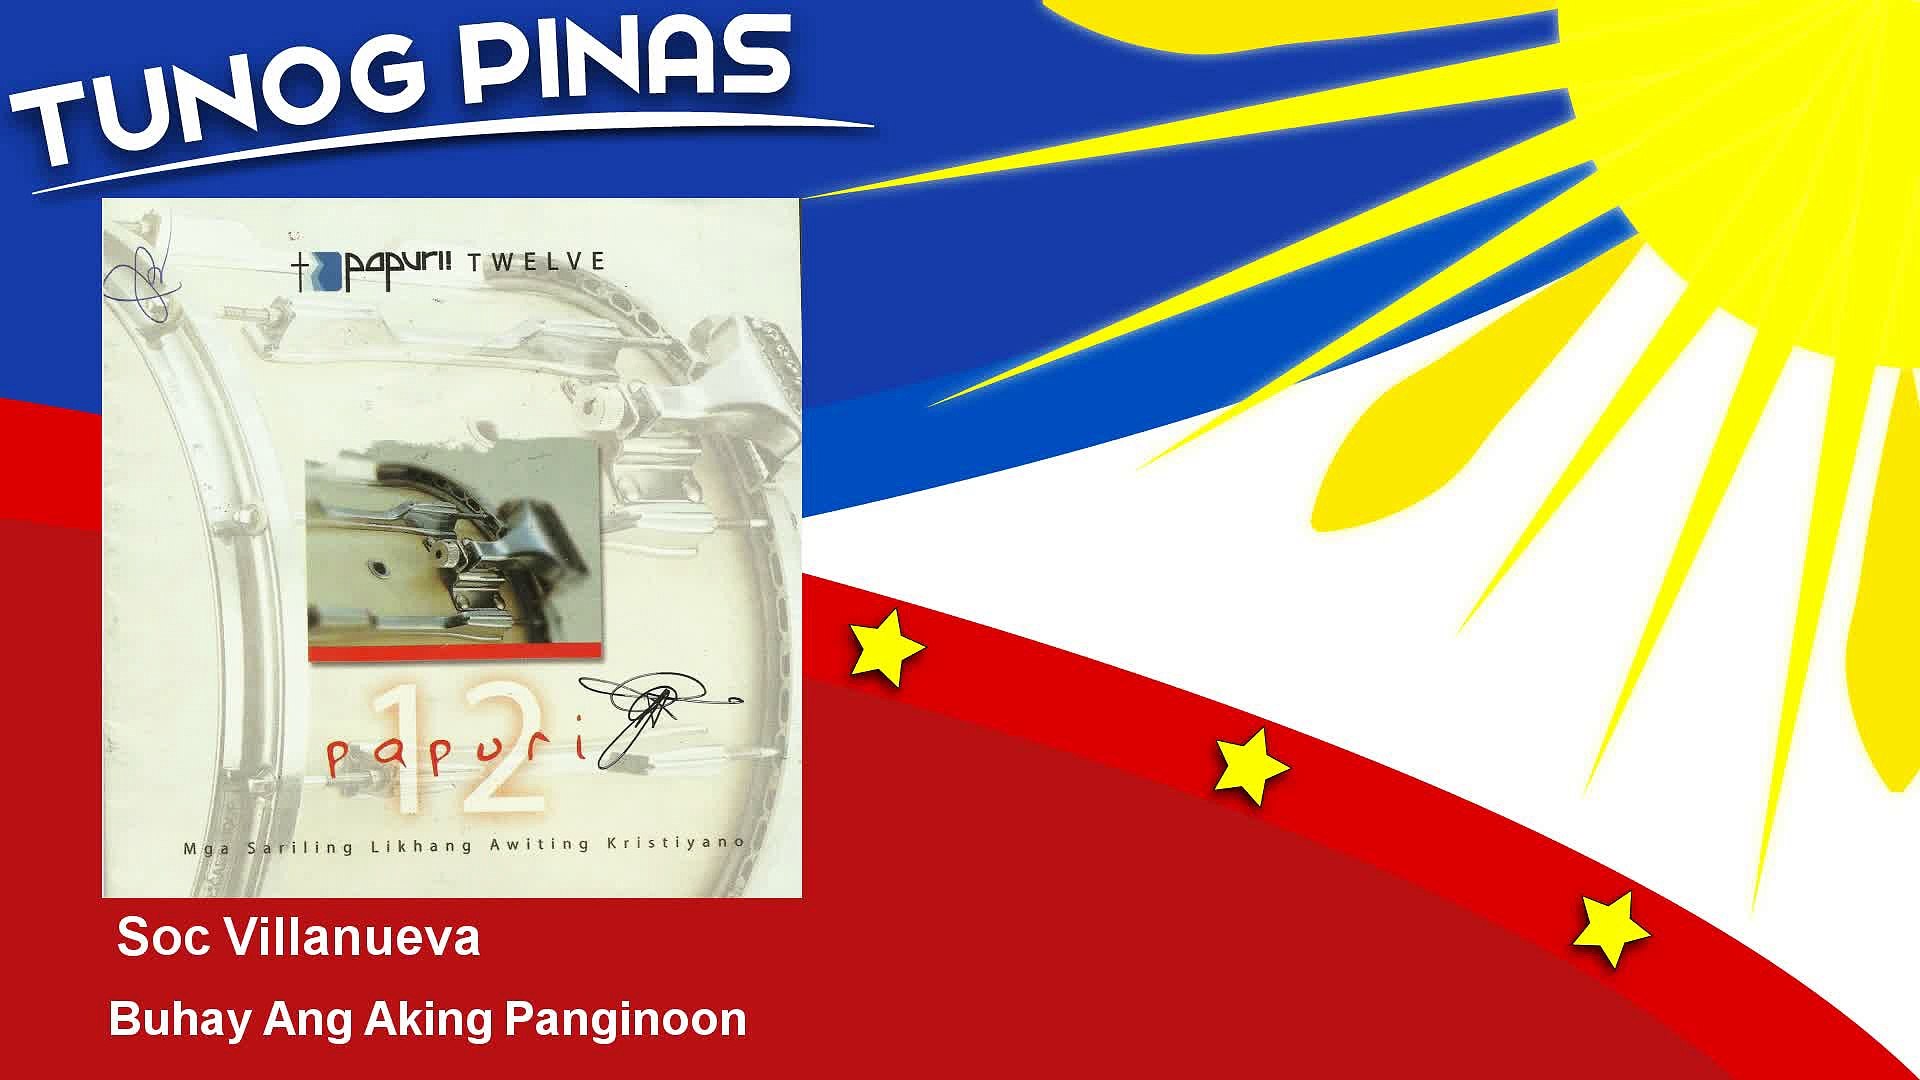 Soc Villanueva - Buhay Ang Aking Panginoon